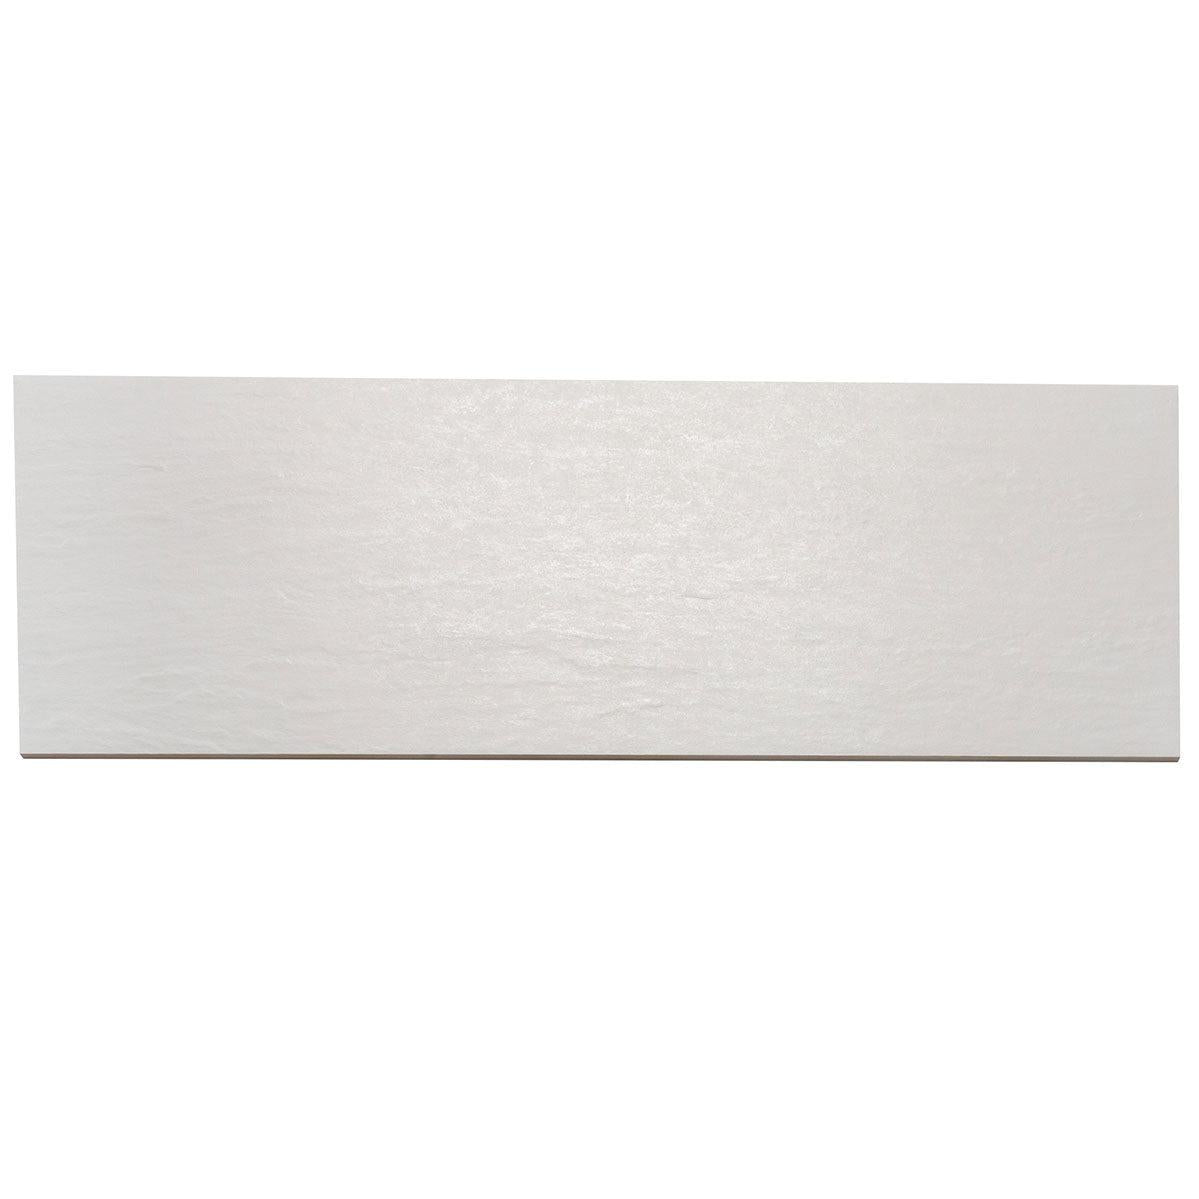 Grazioso Slate White Ceramic Tile